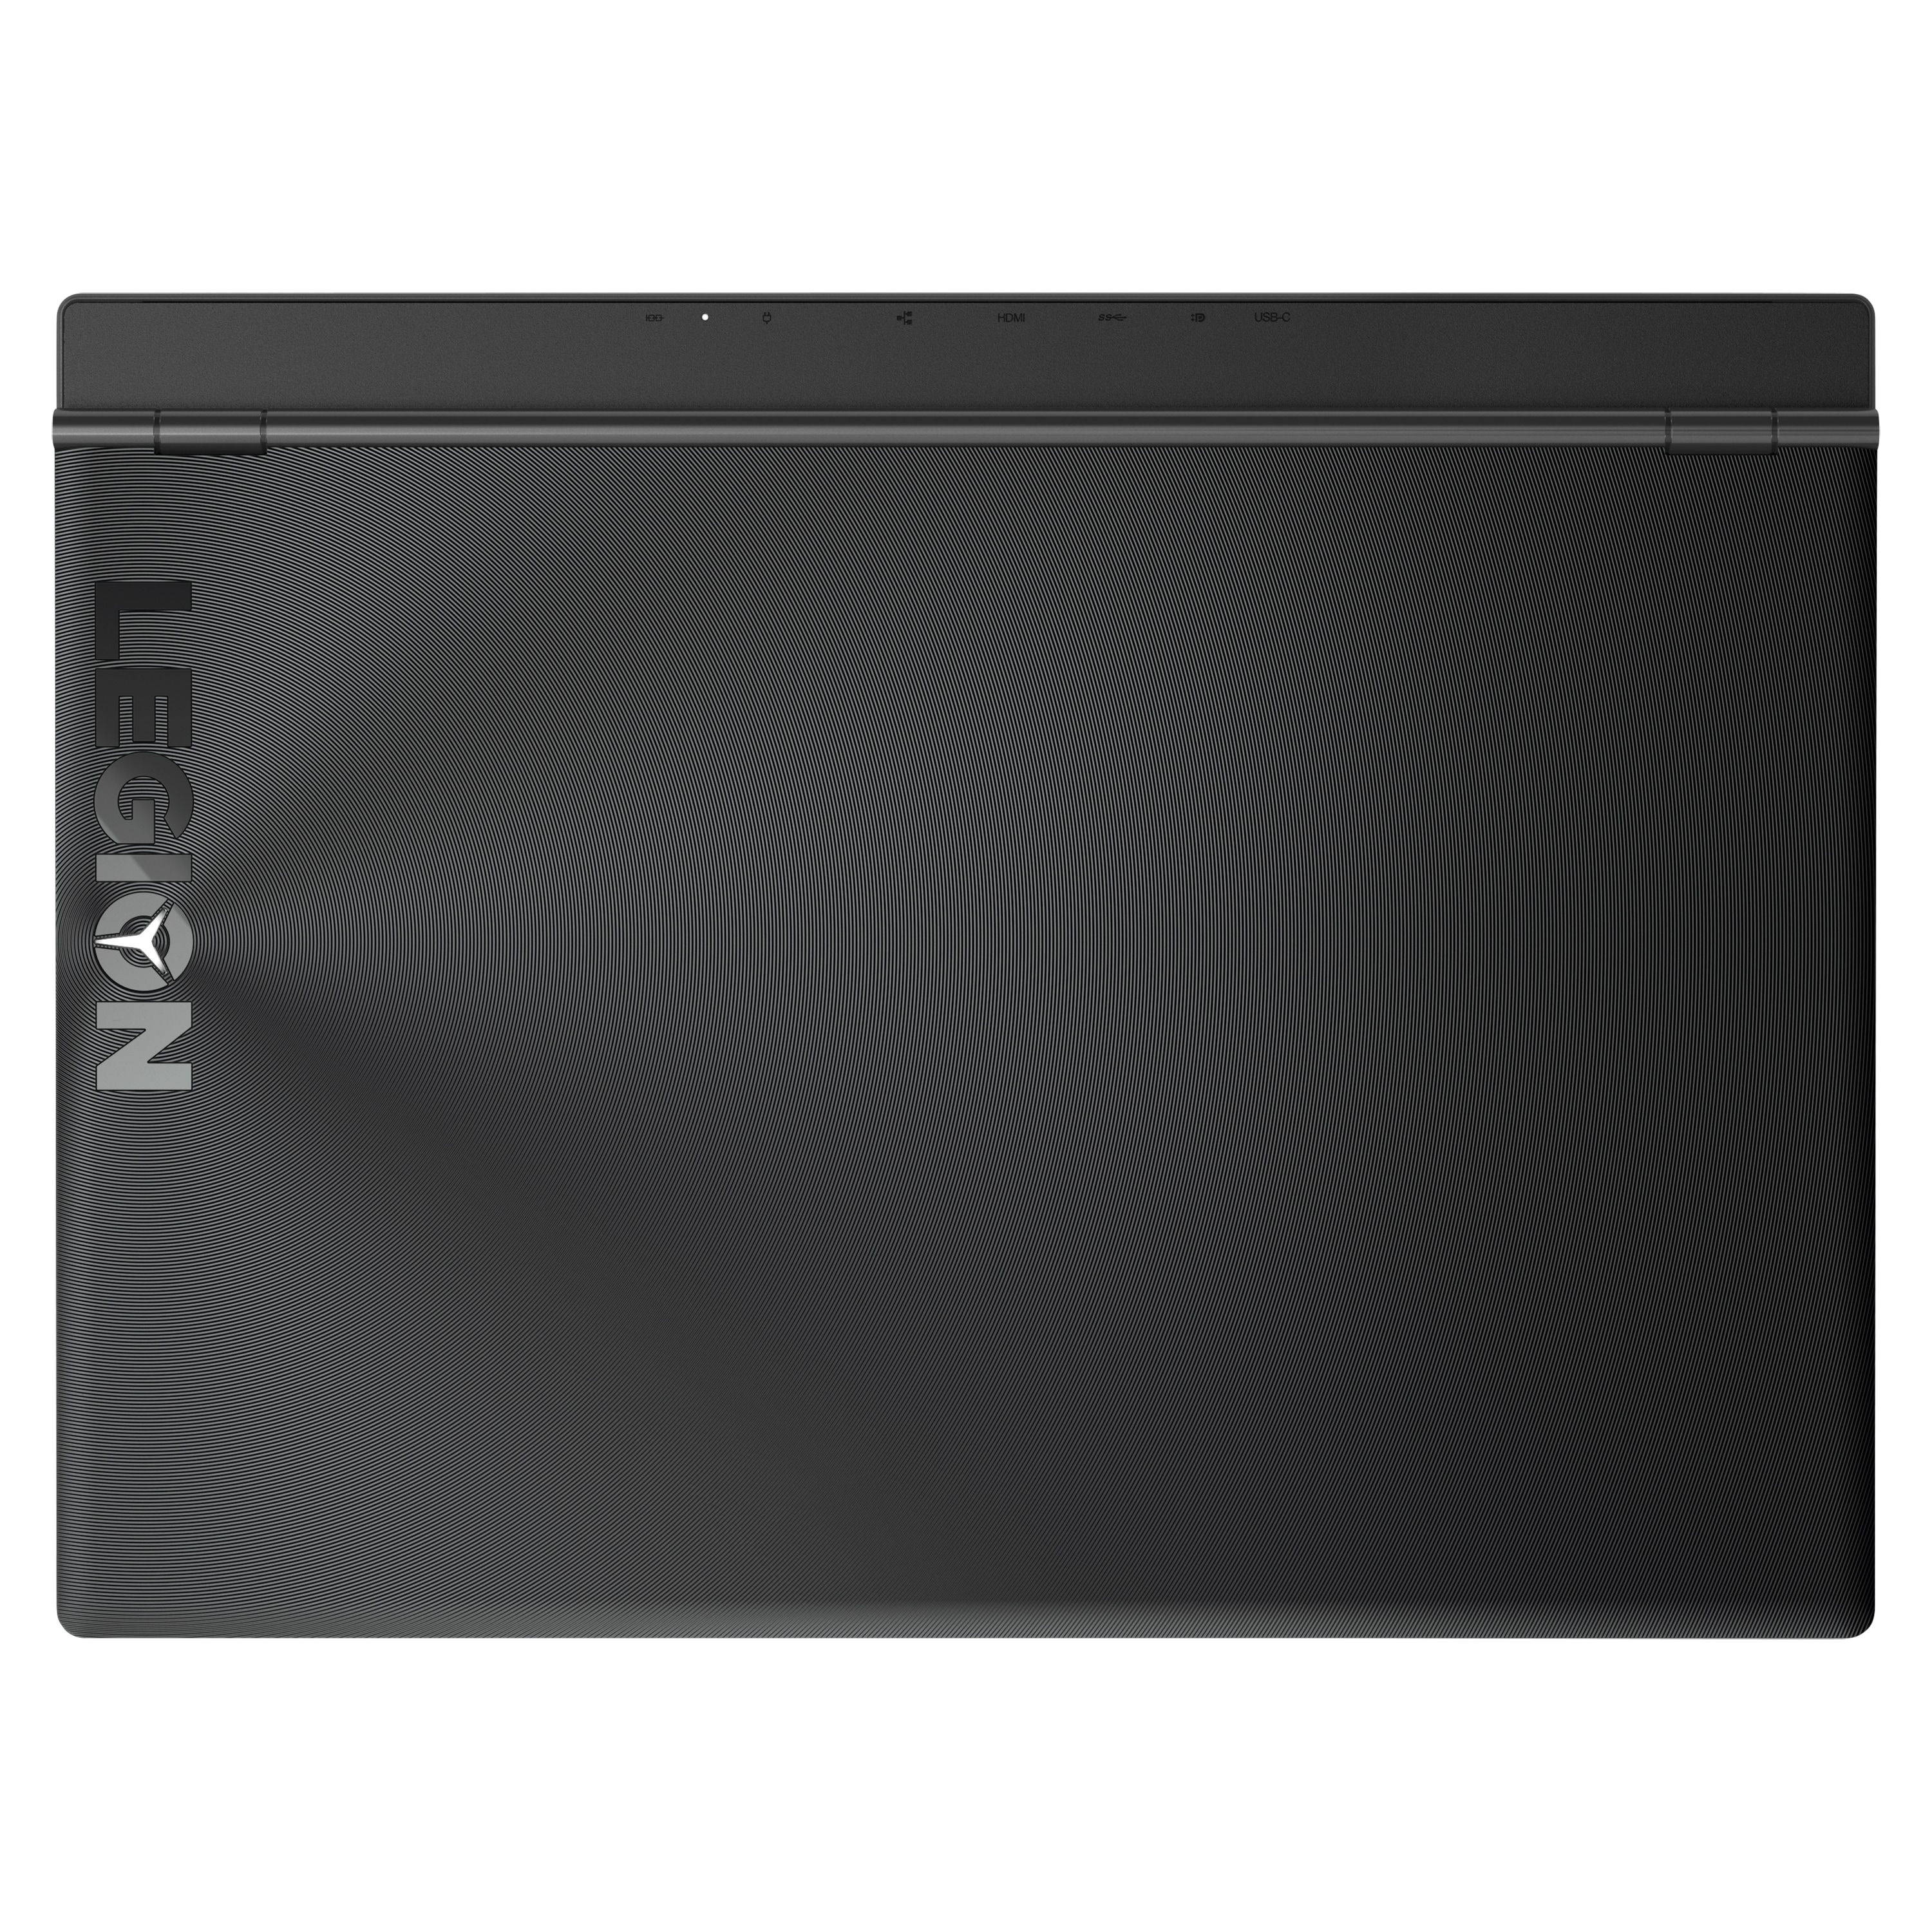 LENOVO Legion Y540-15IRH-PG0, Intel® Core™ i5-9300HF, ohne OS, 39,6 cm (15,6") FHD Display, GTX 1650, 256 GB SSD, 1 TB HDD, 8 GB RAM, Core Gaming Notebook